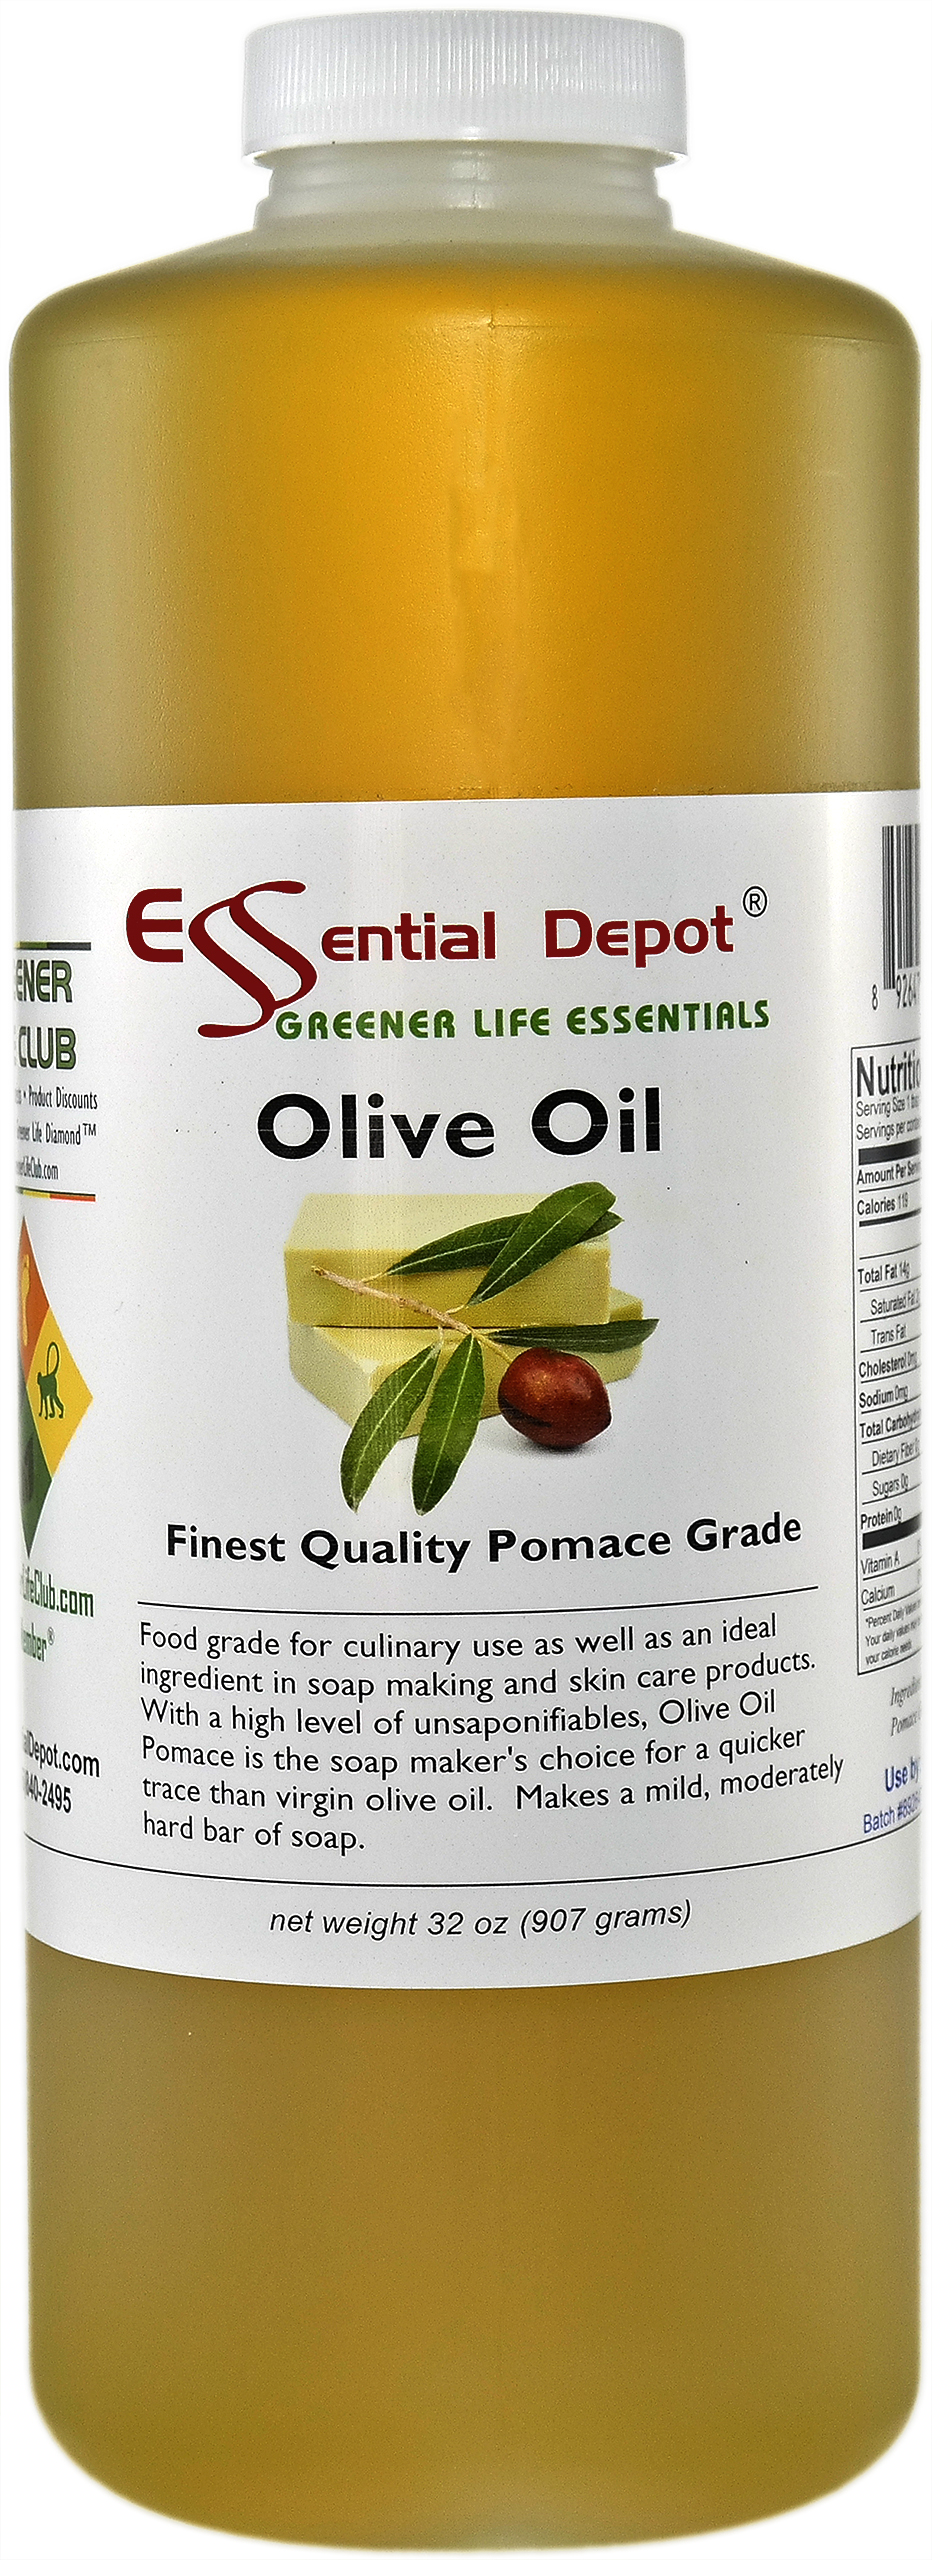 Olive Oil - Certified Pomace Grade - 1 Quart: Essential Depot